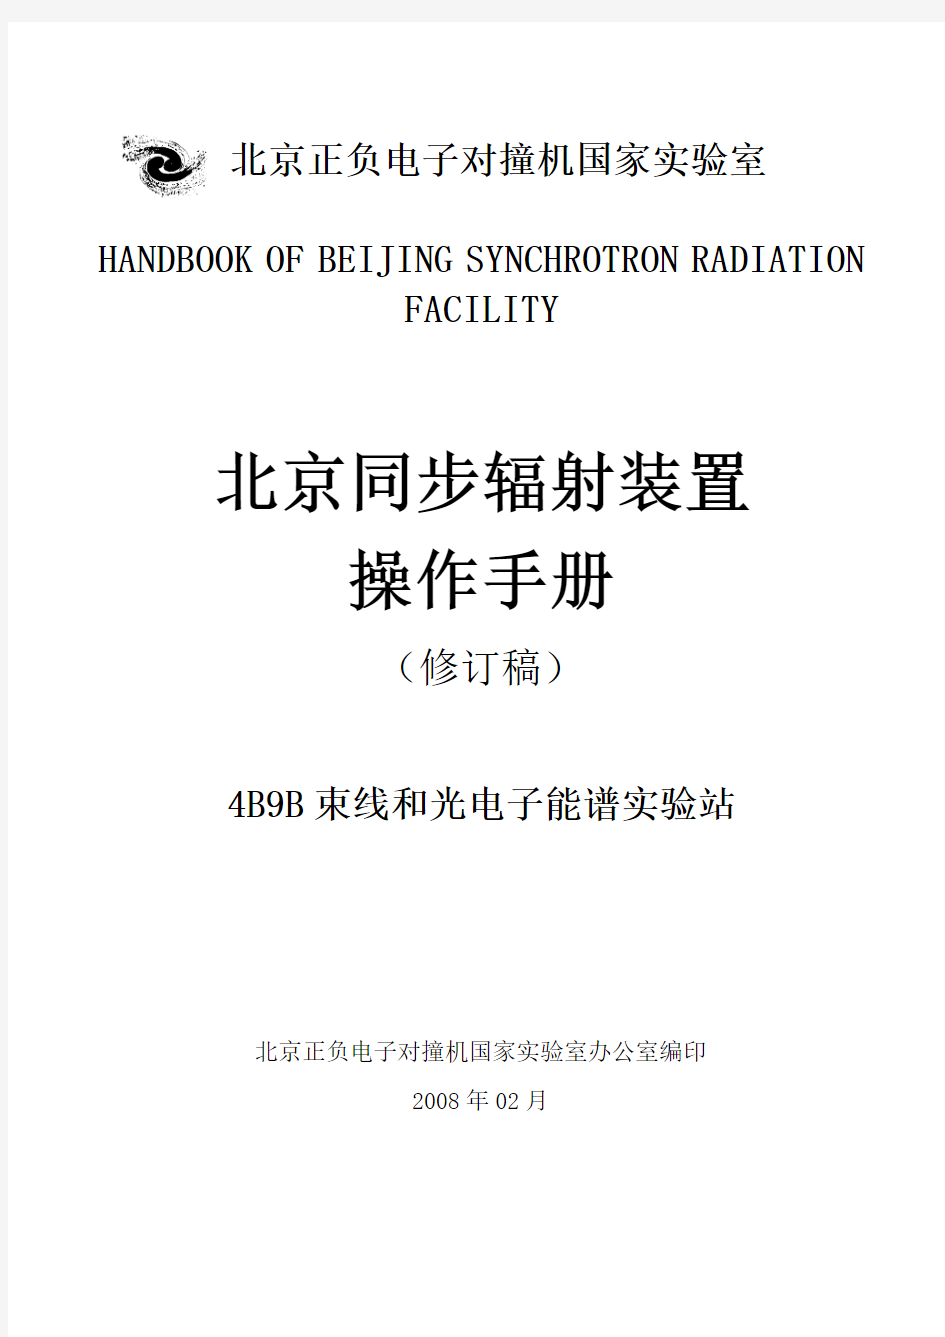 北京同步辐射实验室4B9B 束线和光电子能谱实验站